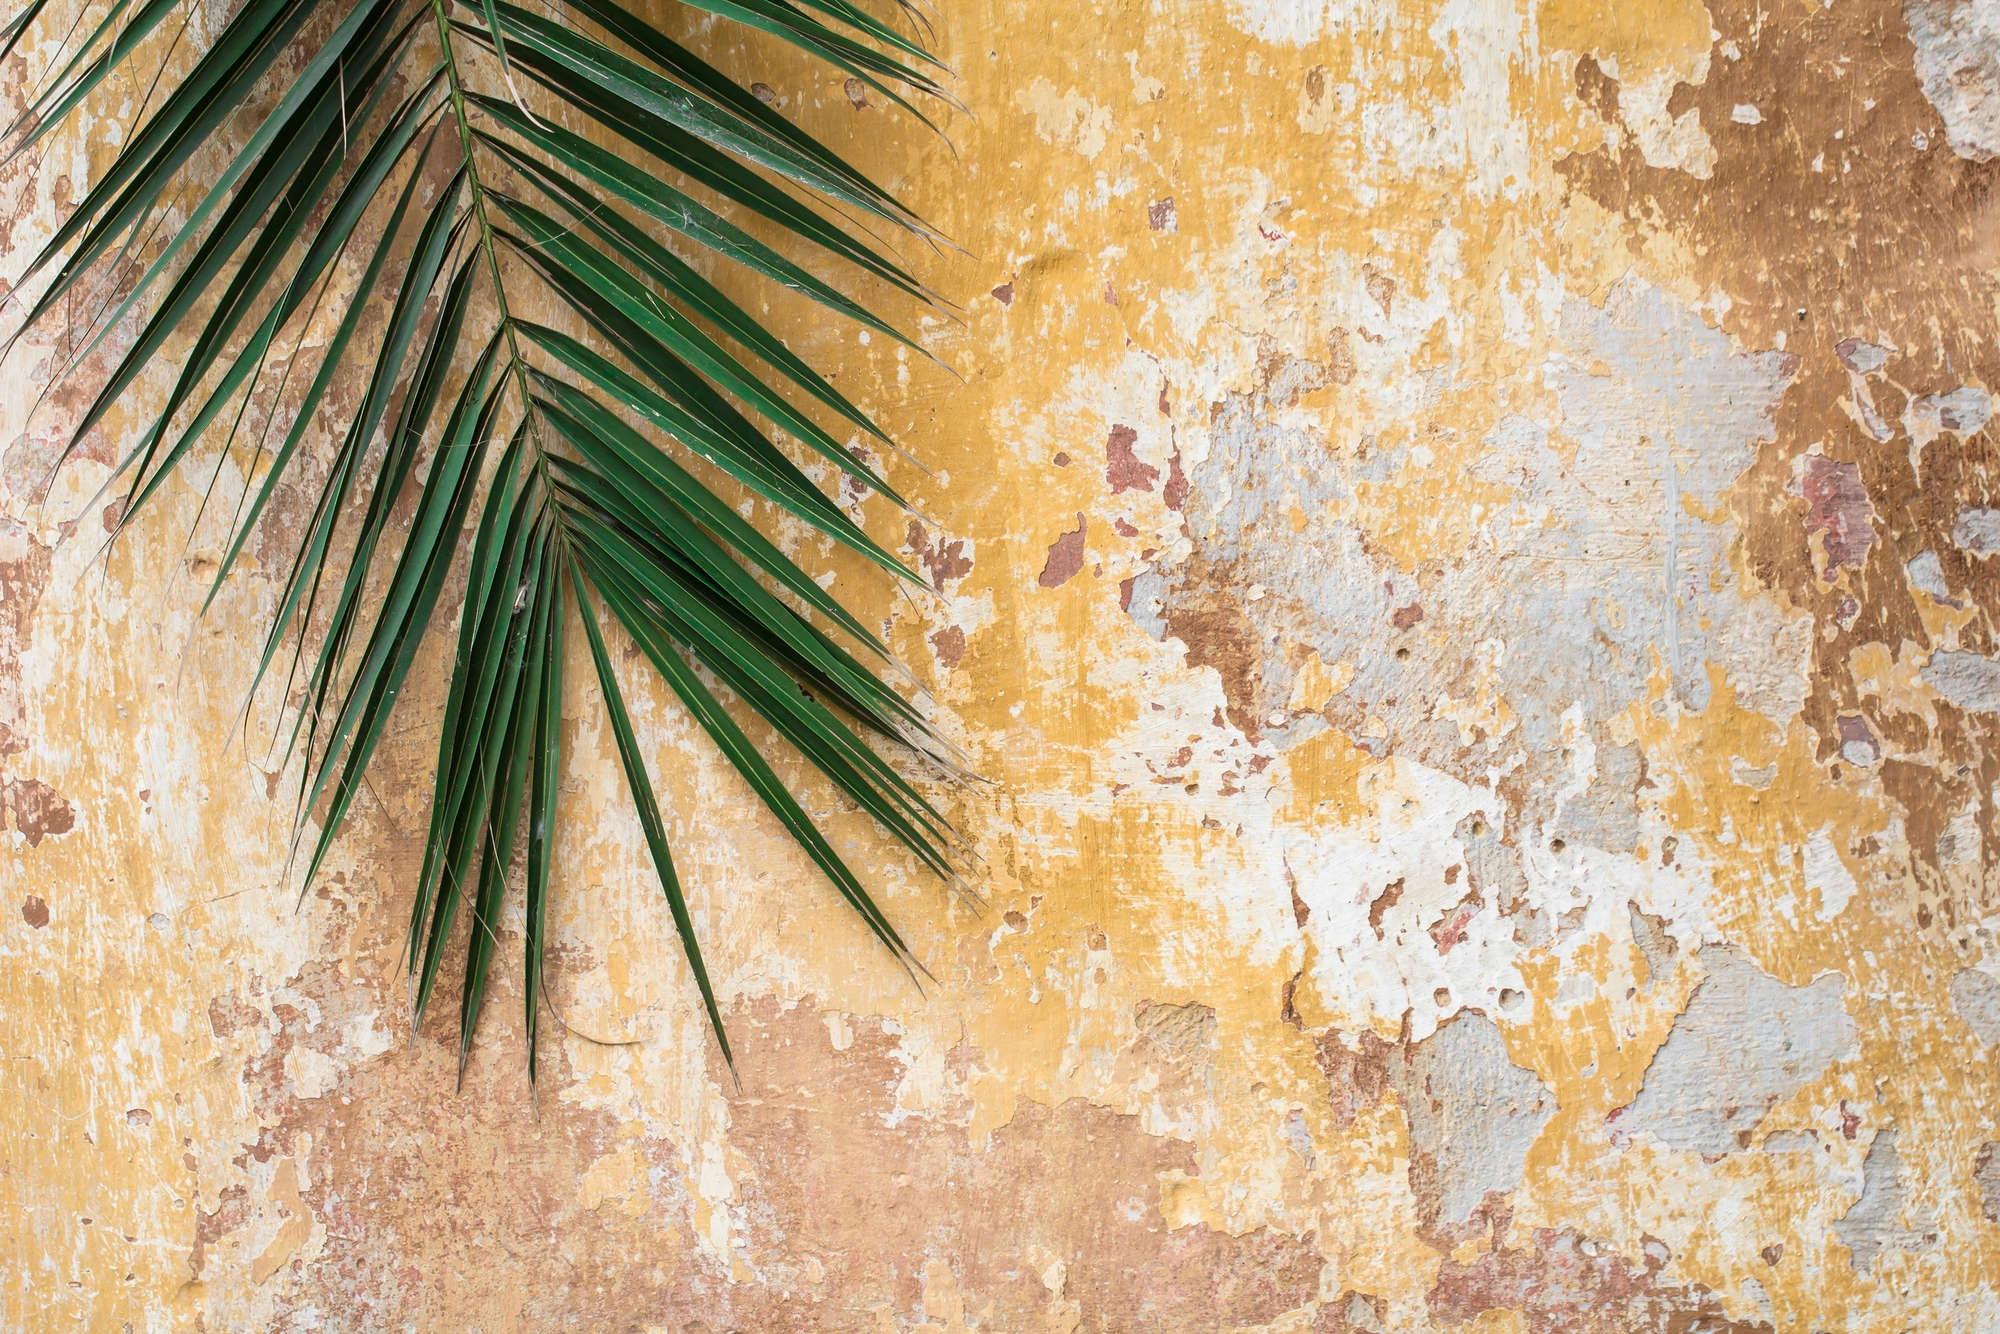             Papel pintado Naturaleza Hoja de palma frente a pared de piedra sobre tejido no tejido liso mate
        